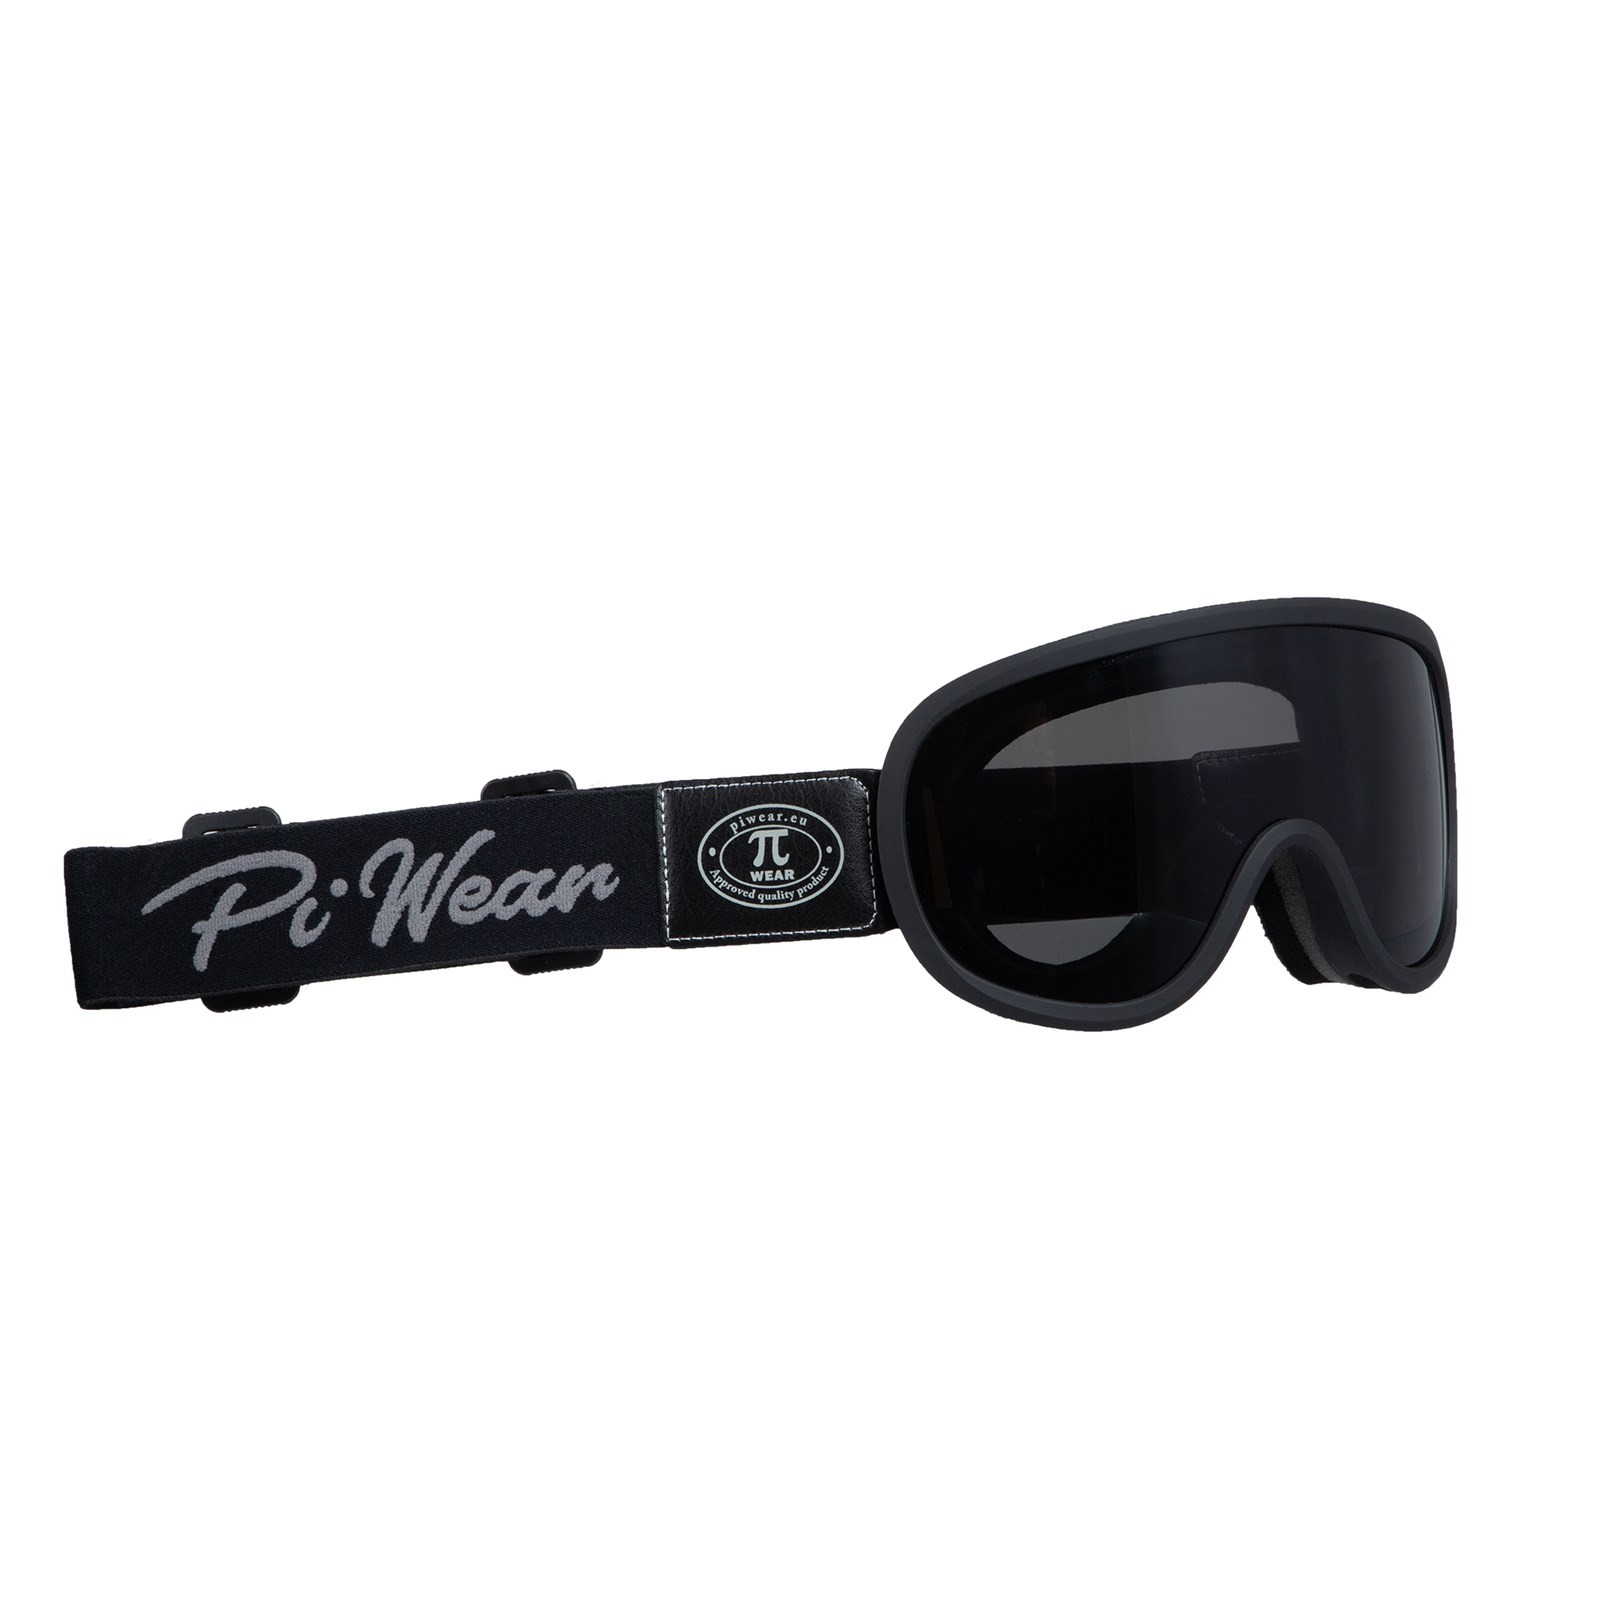 PiWear® Arizona Crossbrille Motorradbrille Überbrille für Brillenträger Retro gepolstert beschlagfrei Rahmen grau schwarz Band graue Logo schwarz Glas dunkel getönt silber verspiegelt 